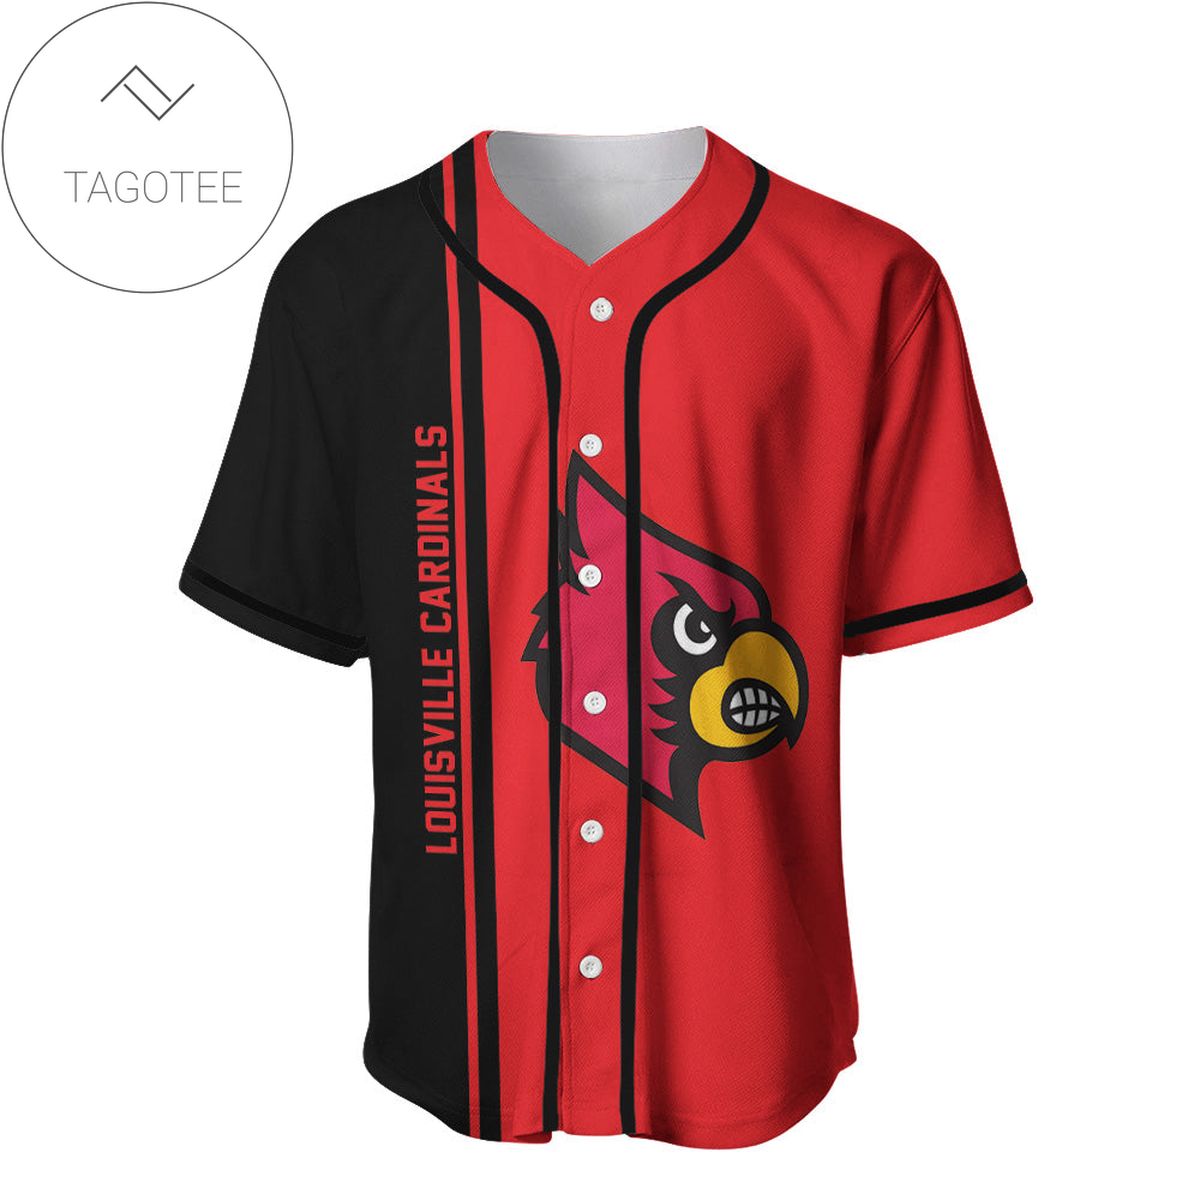 Louisville Cardinals Baseball Jersey Half Style - NCAA